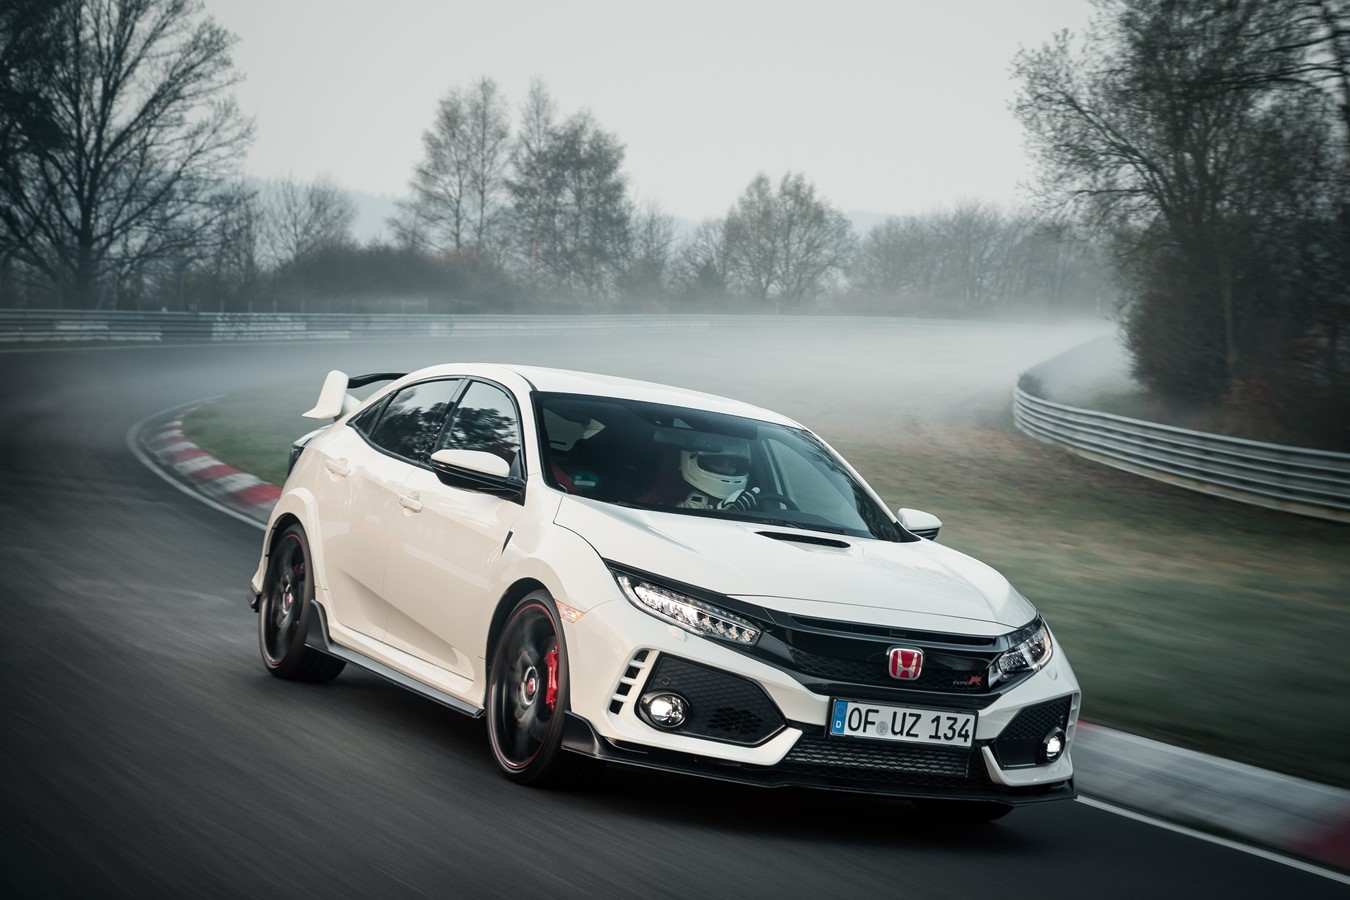 17 Honda Civic Type R Sets New Front Wheel Drive Lap Record At Nurburgring